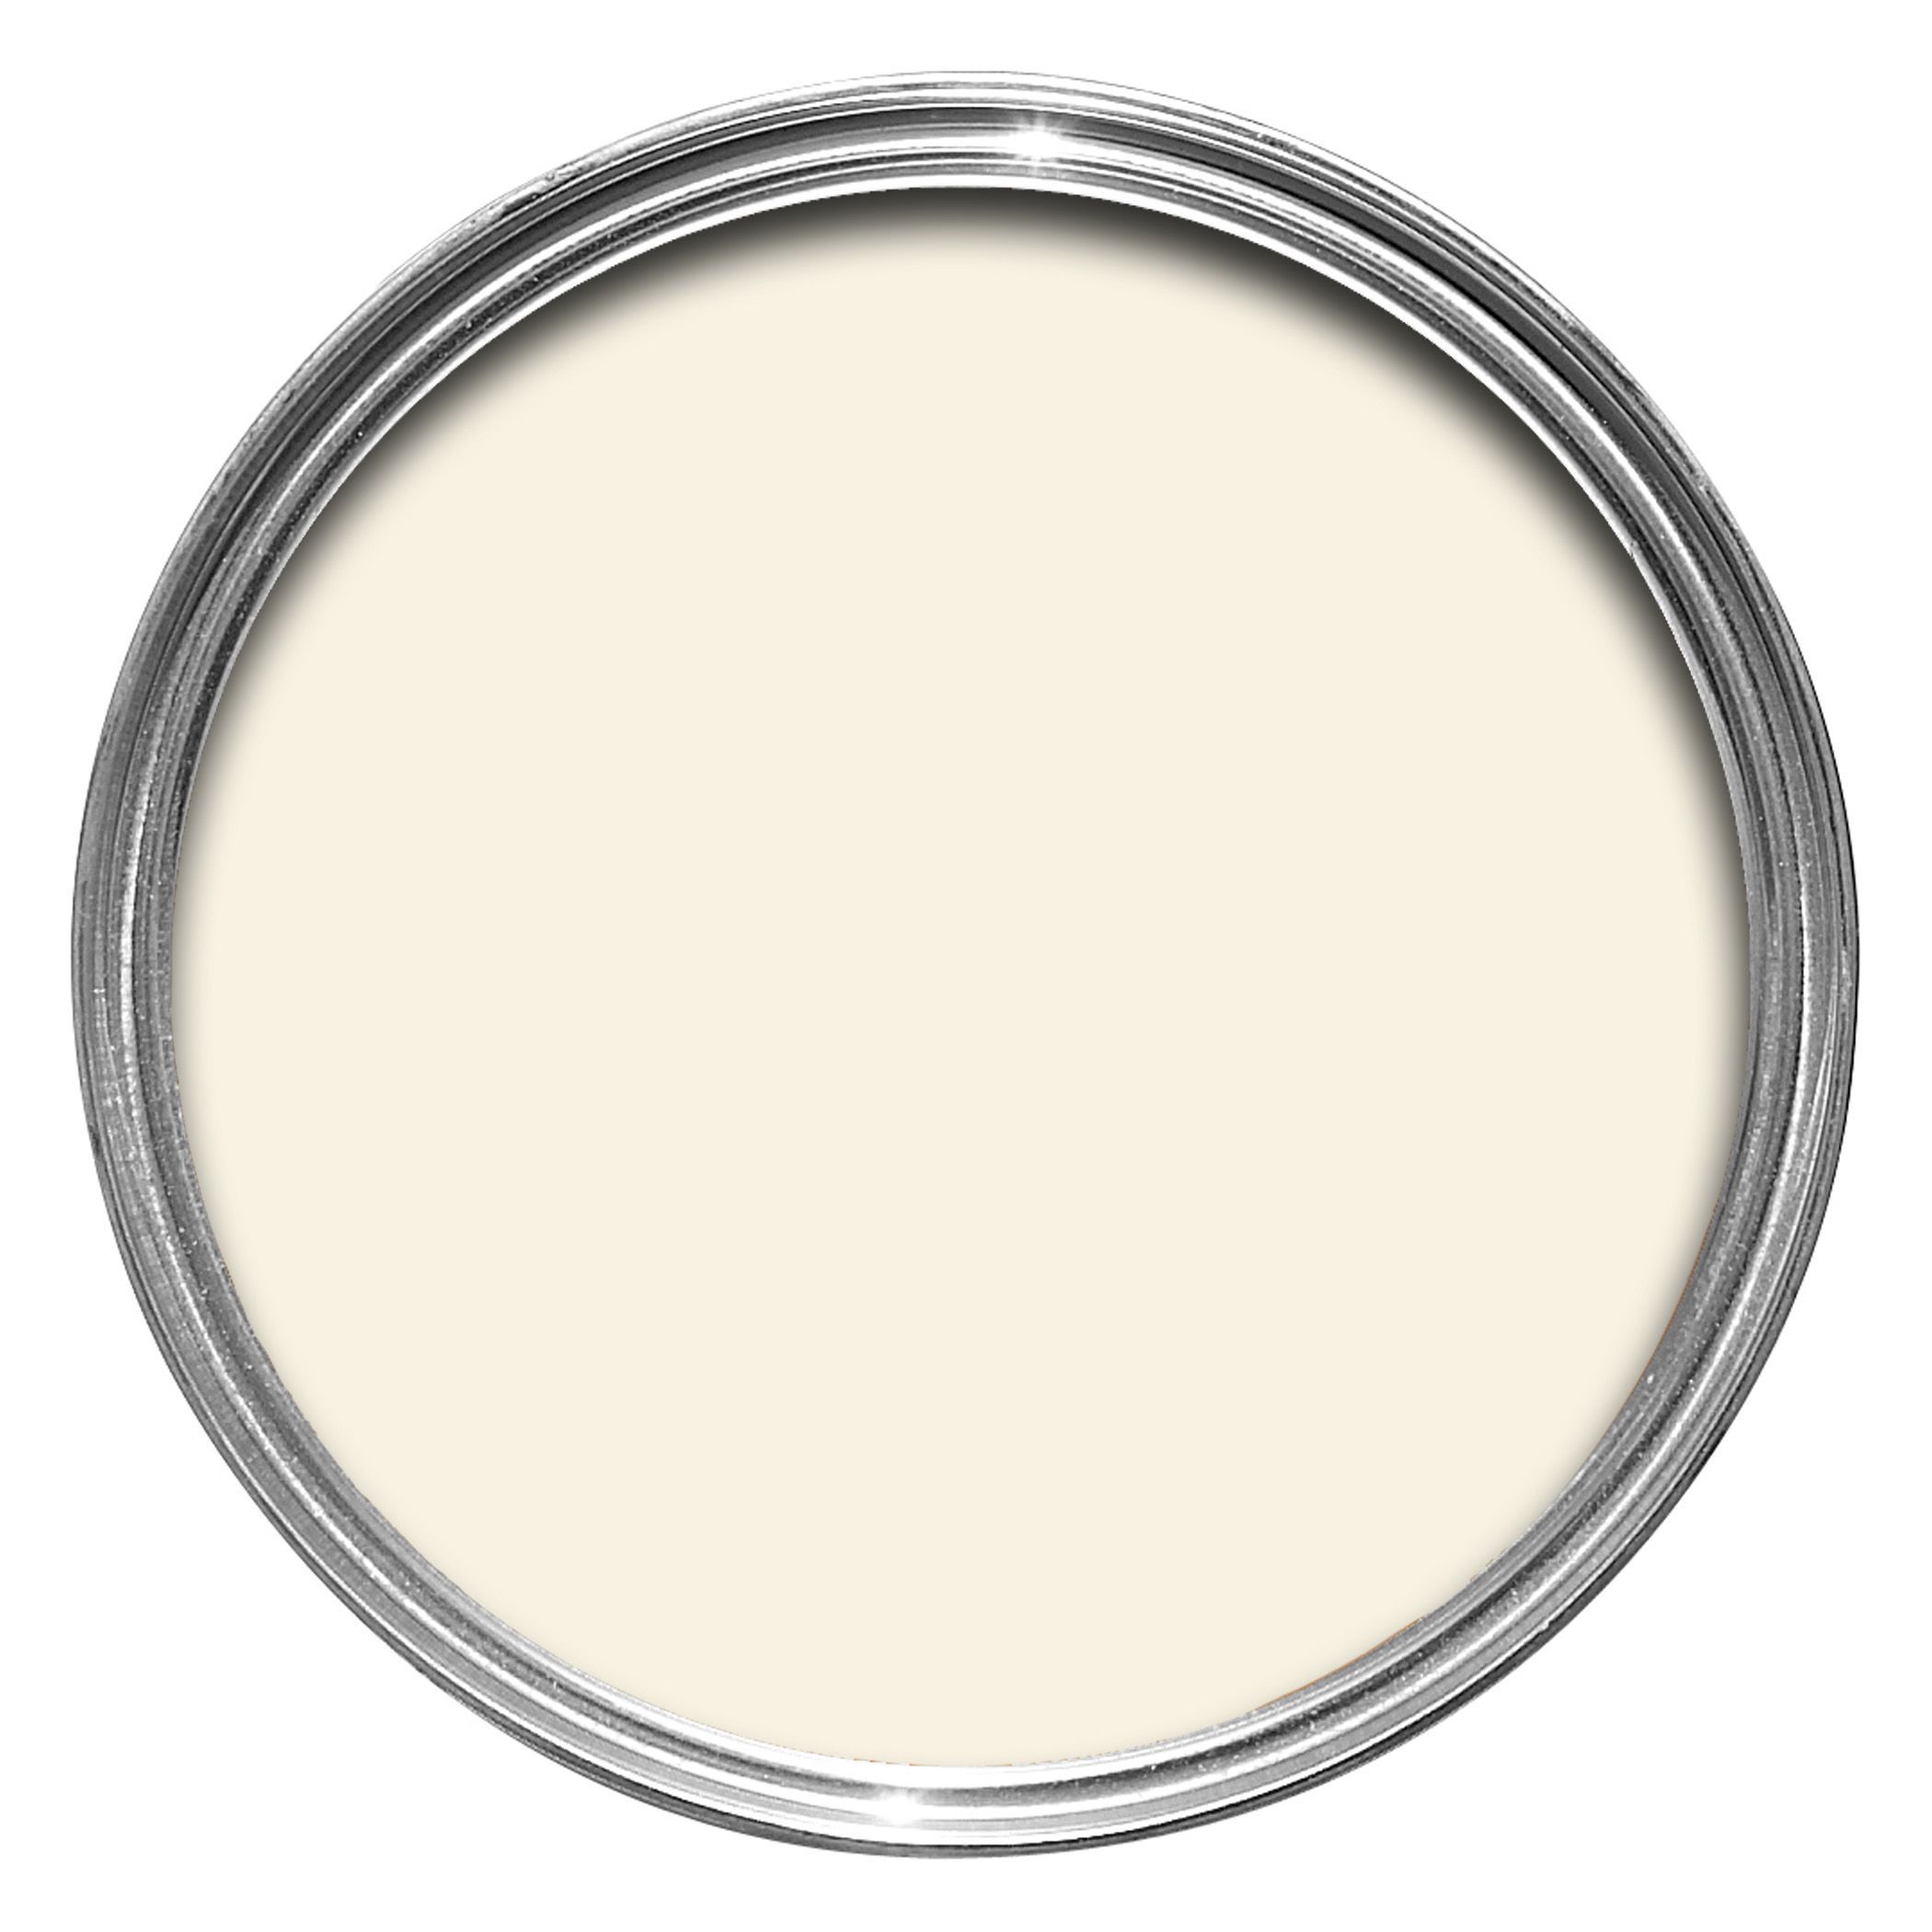 White emulsion paint